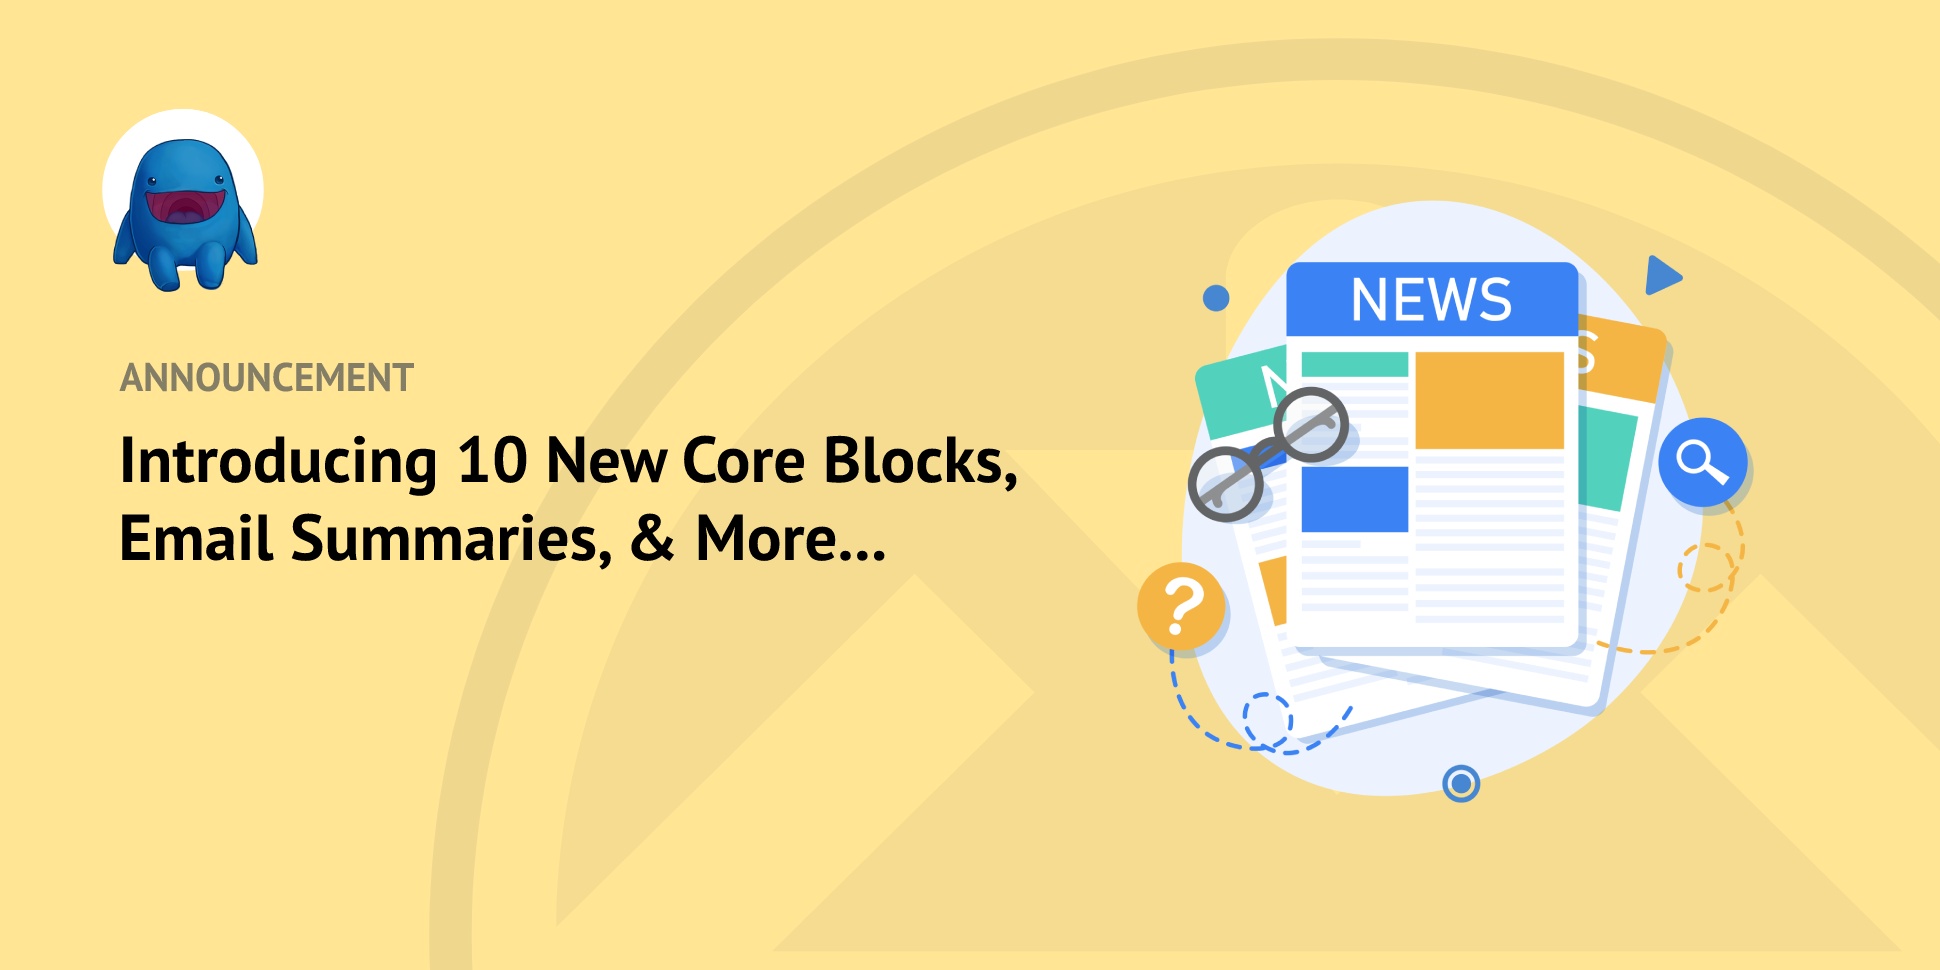 New EDD 3.1 Release: 10 New Core Blocks and More